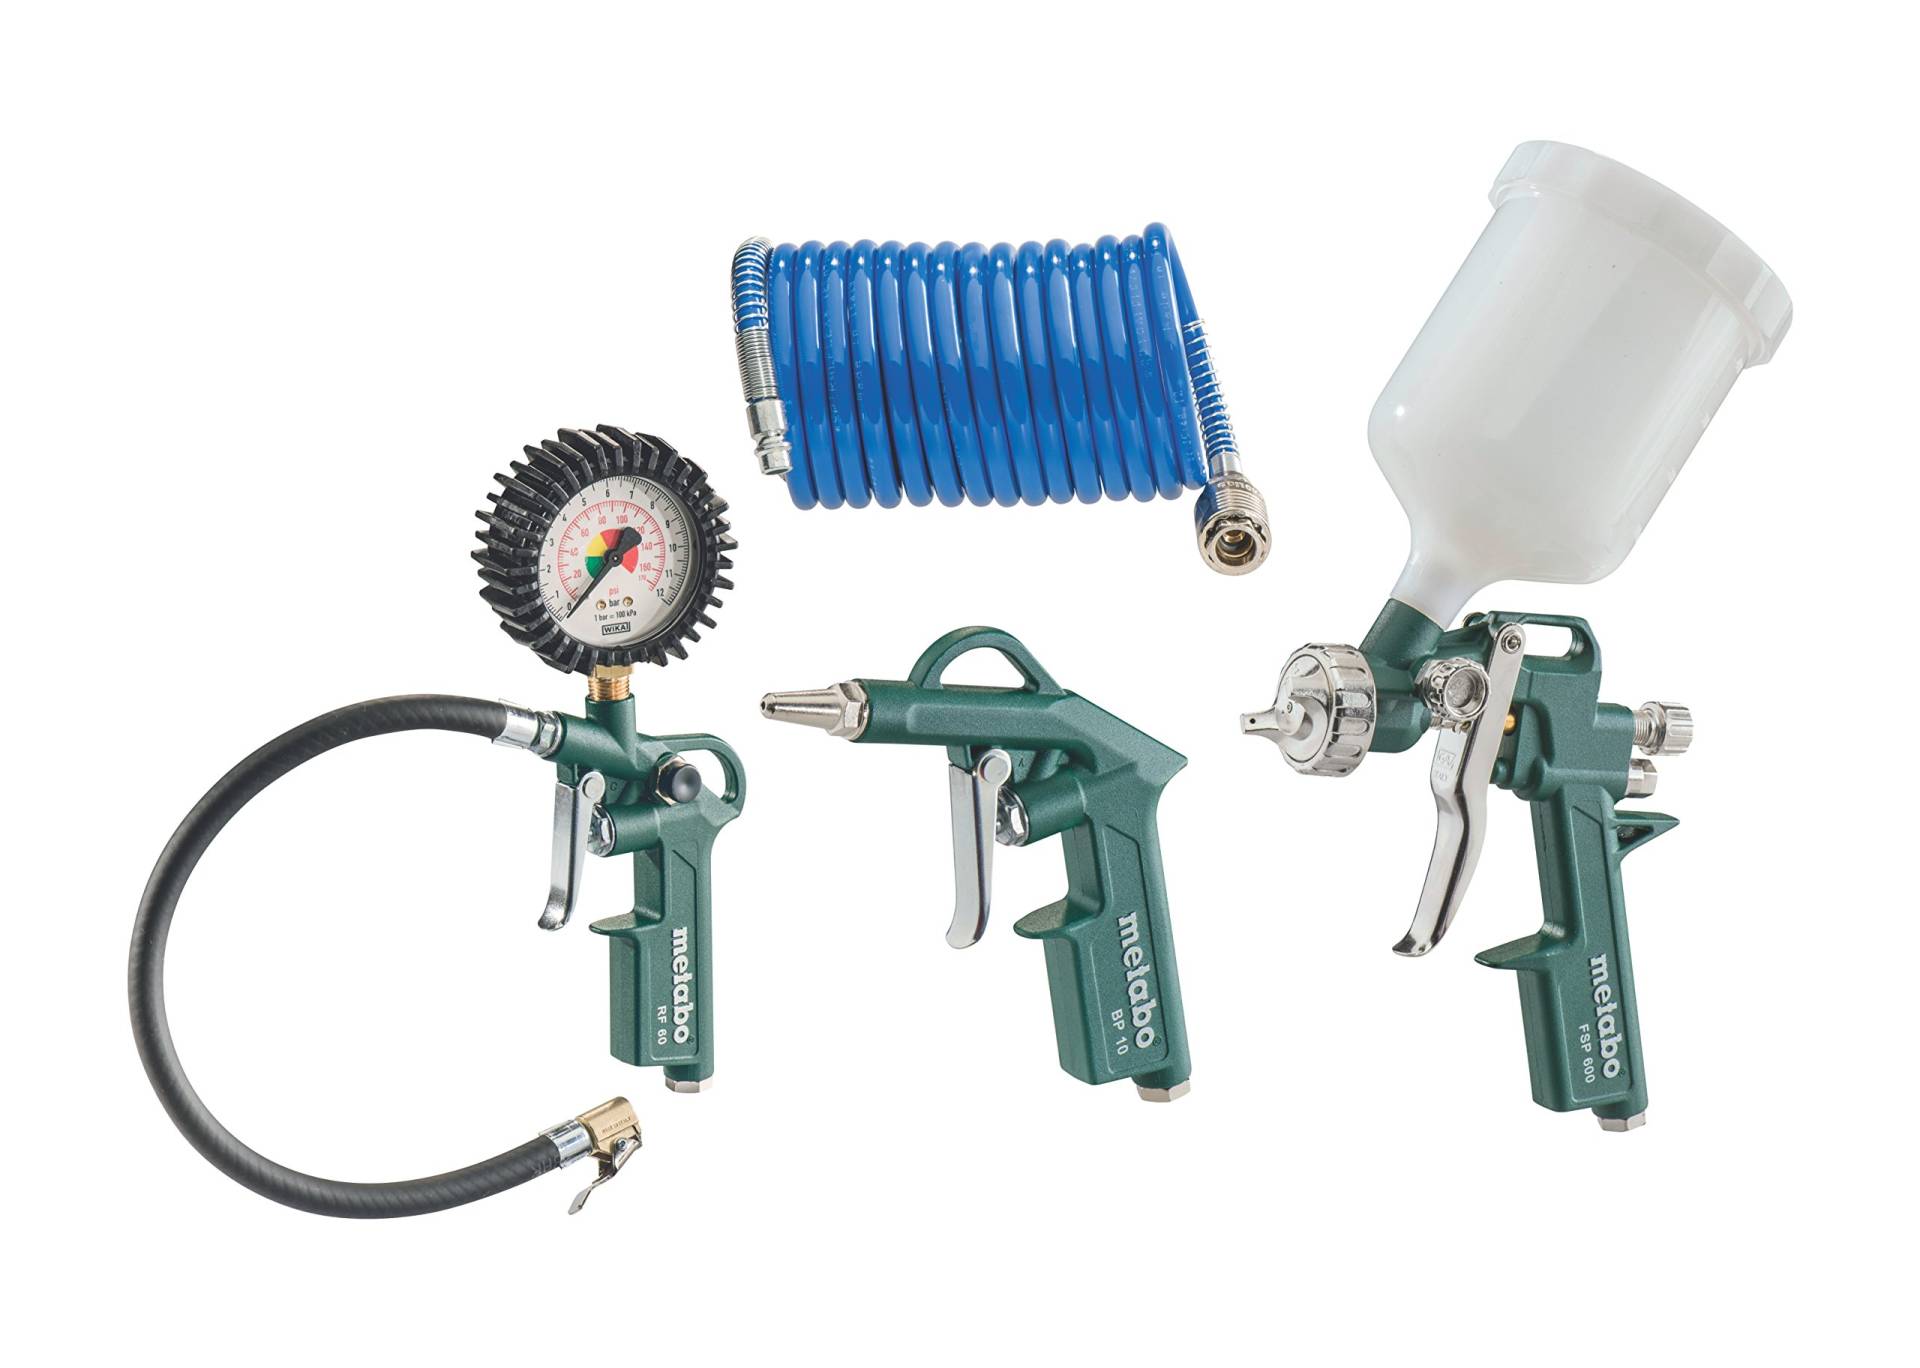 Metabo Druckluft-Werkzeugset LPZ 4 Set (601585000) im Karton bestehend aus Blaspistole, Reifenfüllmessgerät, Farbspritzpistole mit Fließbecher und PA-Spiralschlauch von Metabo